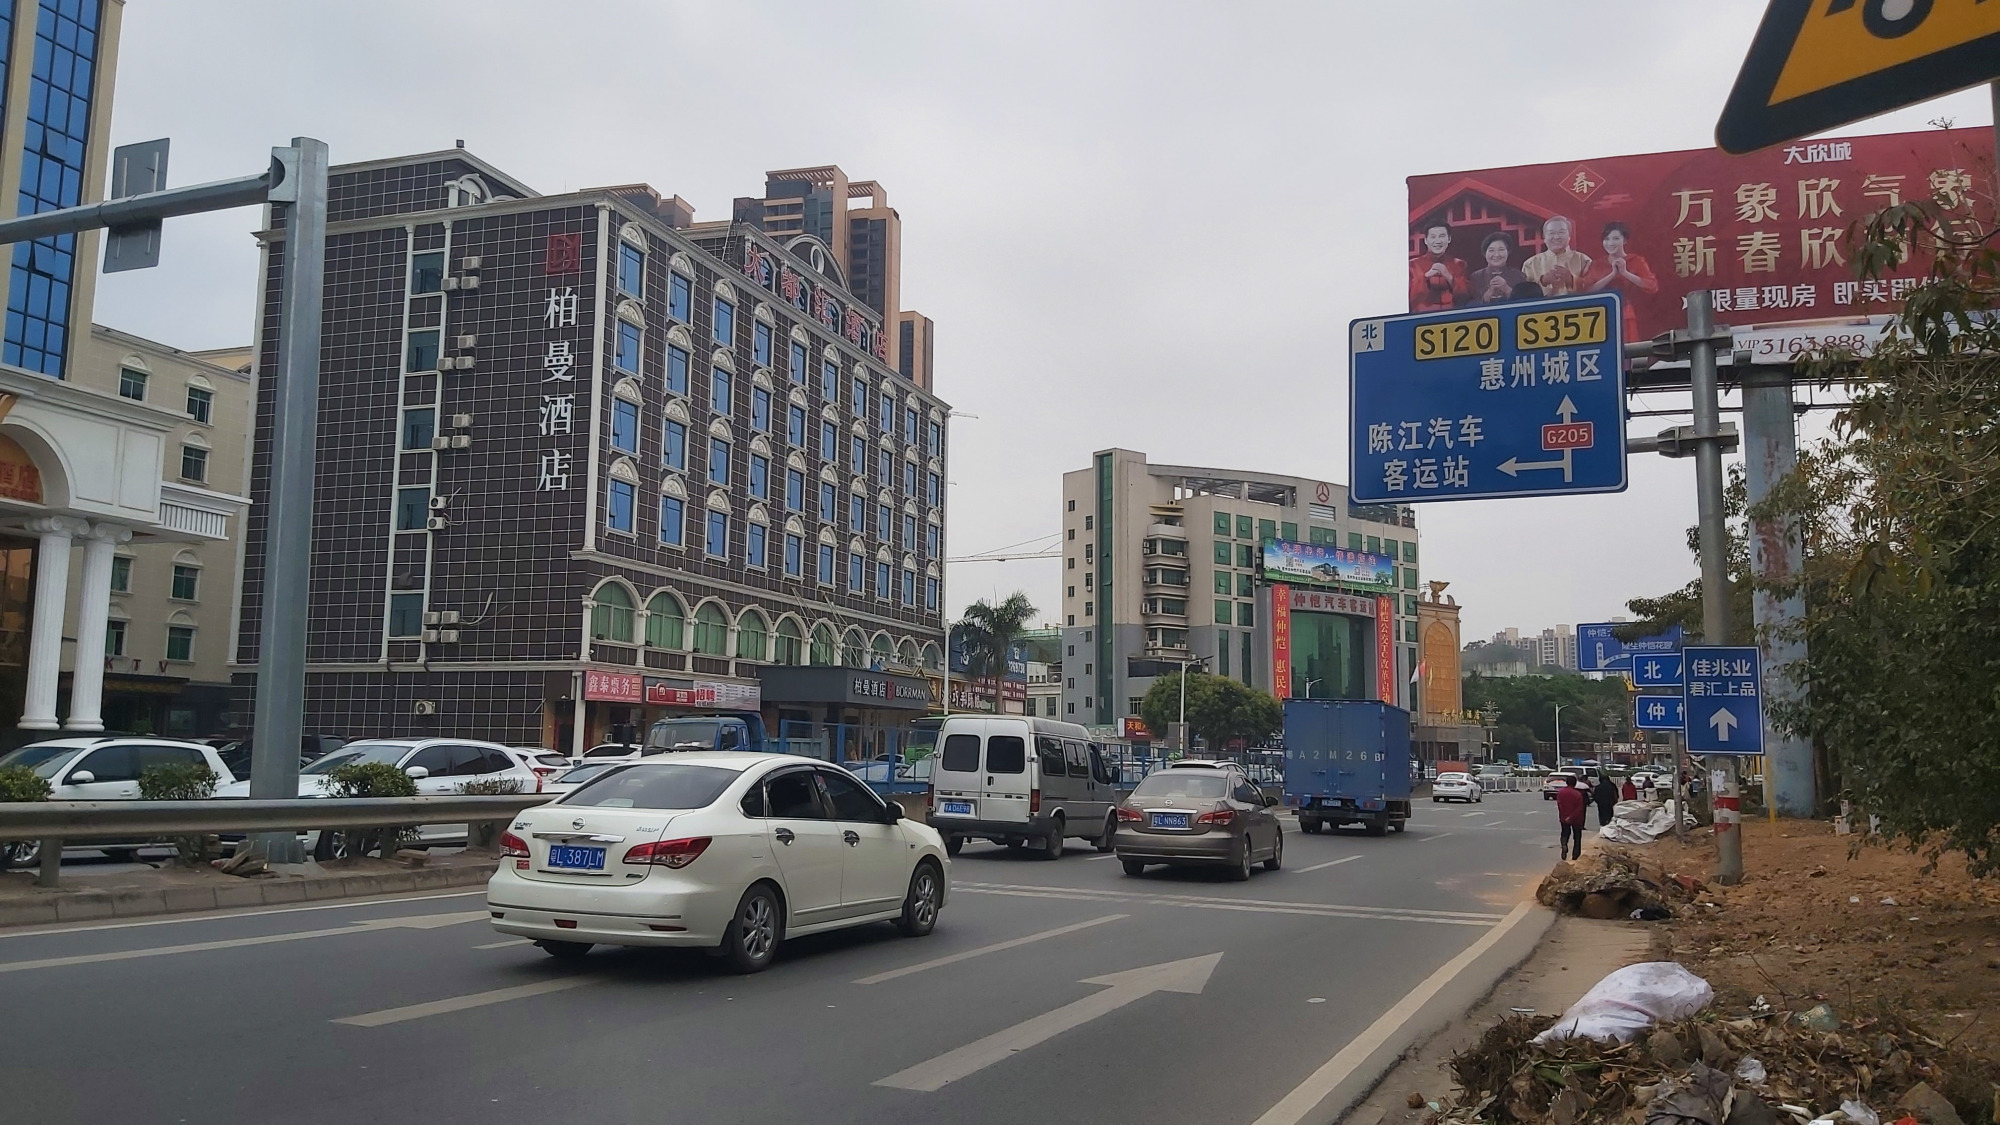 惠州陈江镇一游繁忙的街道一个繁华的城镇